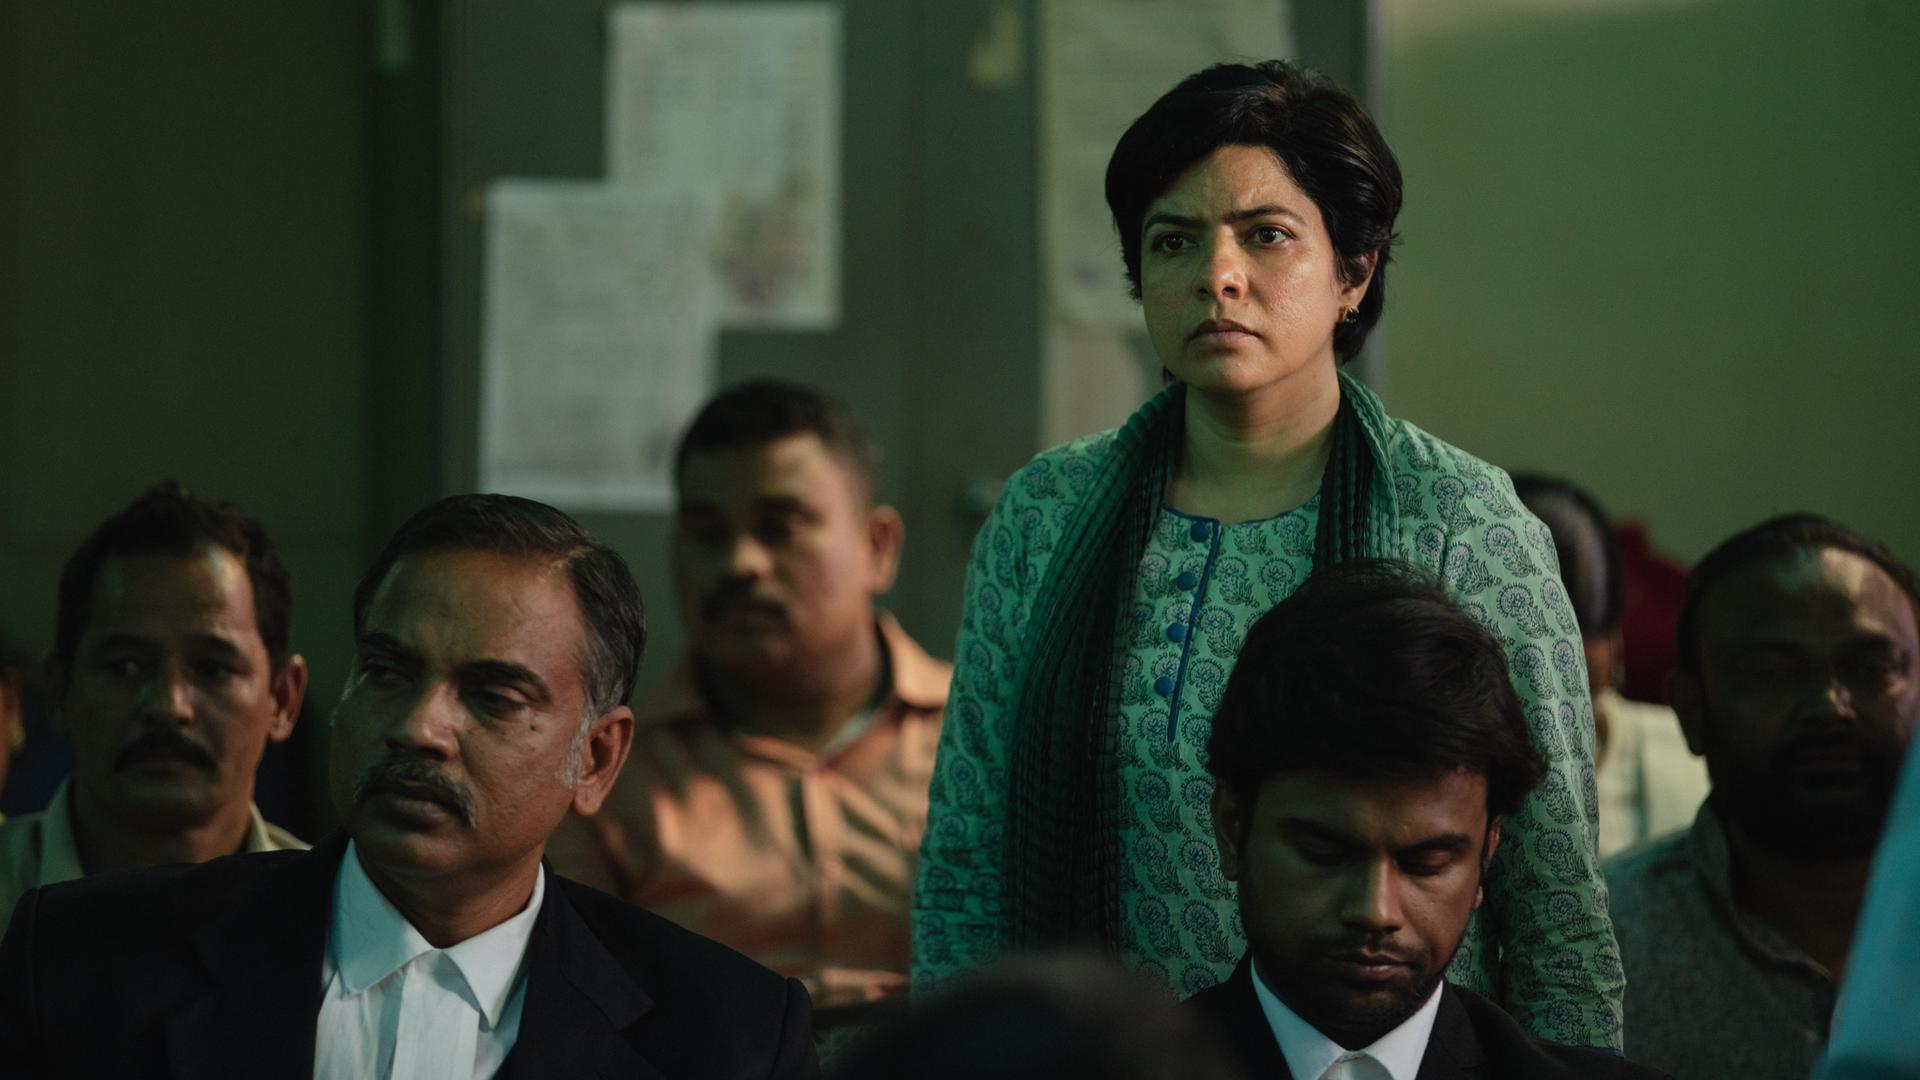 Filmszene aus der Serie "Trial by Fire". Zu sehen ist eine stehende Frau, vermutlich die Hauptdarstellerin, zwischen sitzenden Männern. Vermutlich in einem Gerichtssaal.